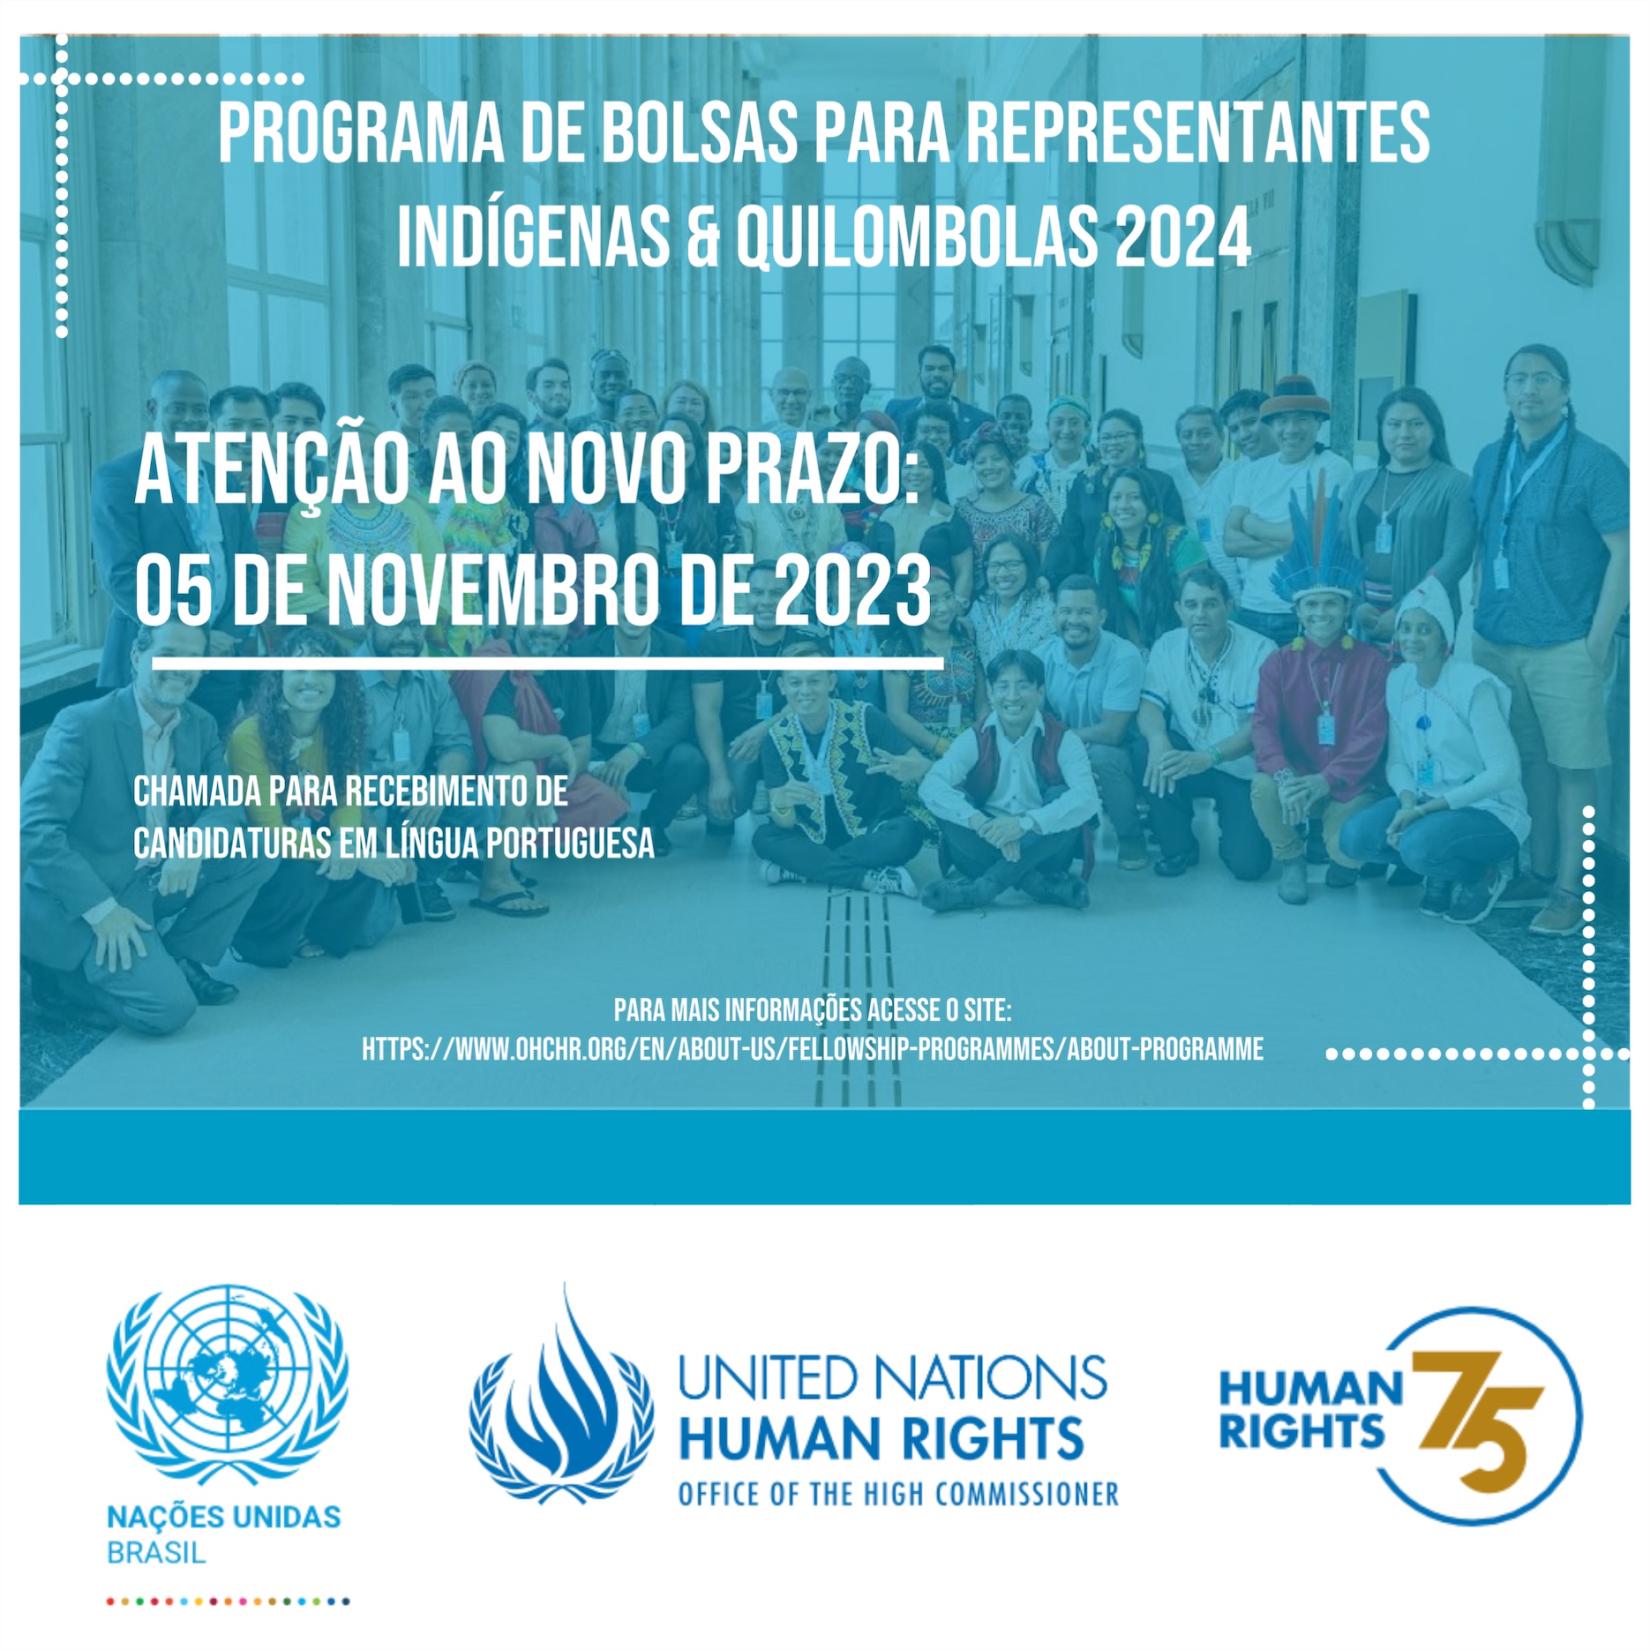 O programa internacional de estudos sobre direitos humanos para representantes indígenas & quilombolas é uma iniciativa do Escritório do Alto Comissariado das Nações Unidas para os Direitos Humanos. 